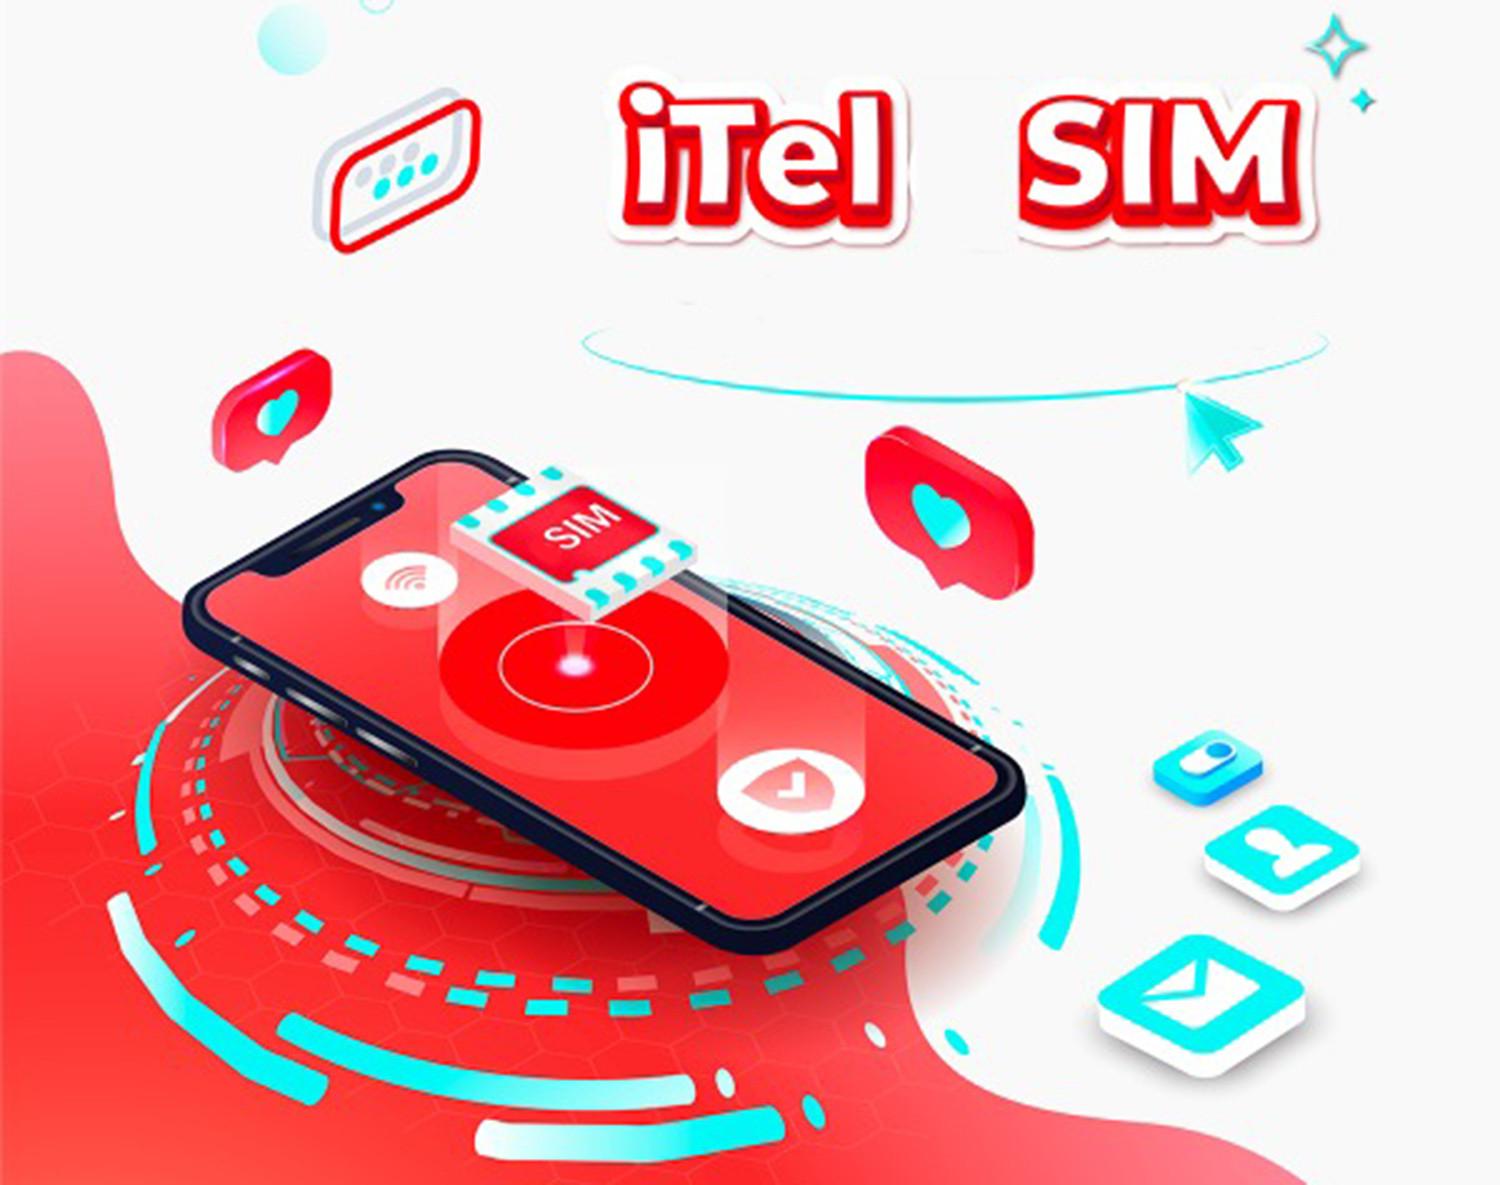 Cách ứng tiền SIM iTel cực nhanh chỉ trong 15s: Bạn đã biết chưa?